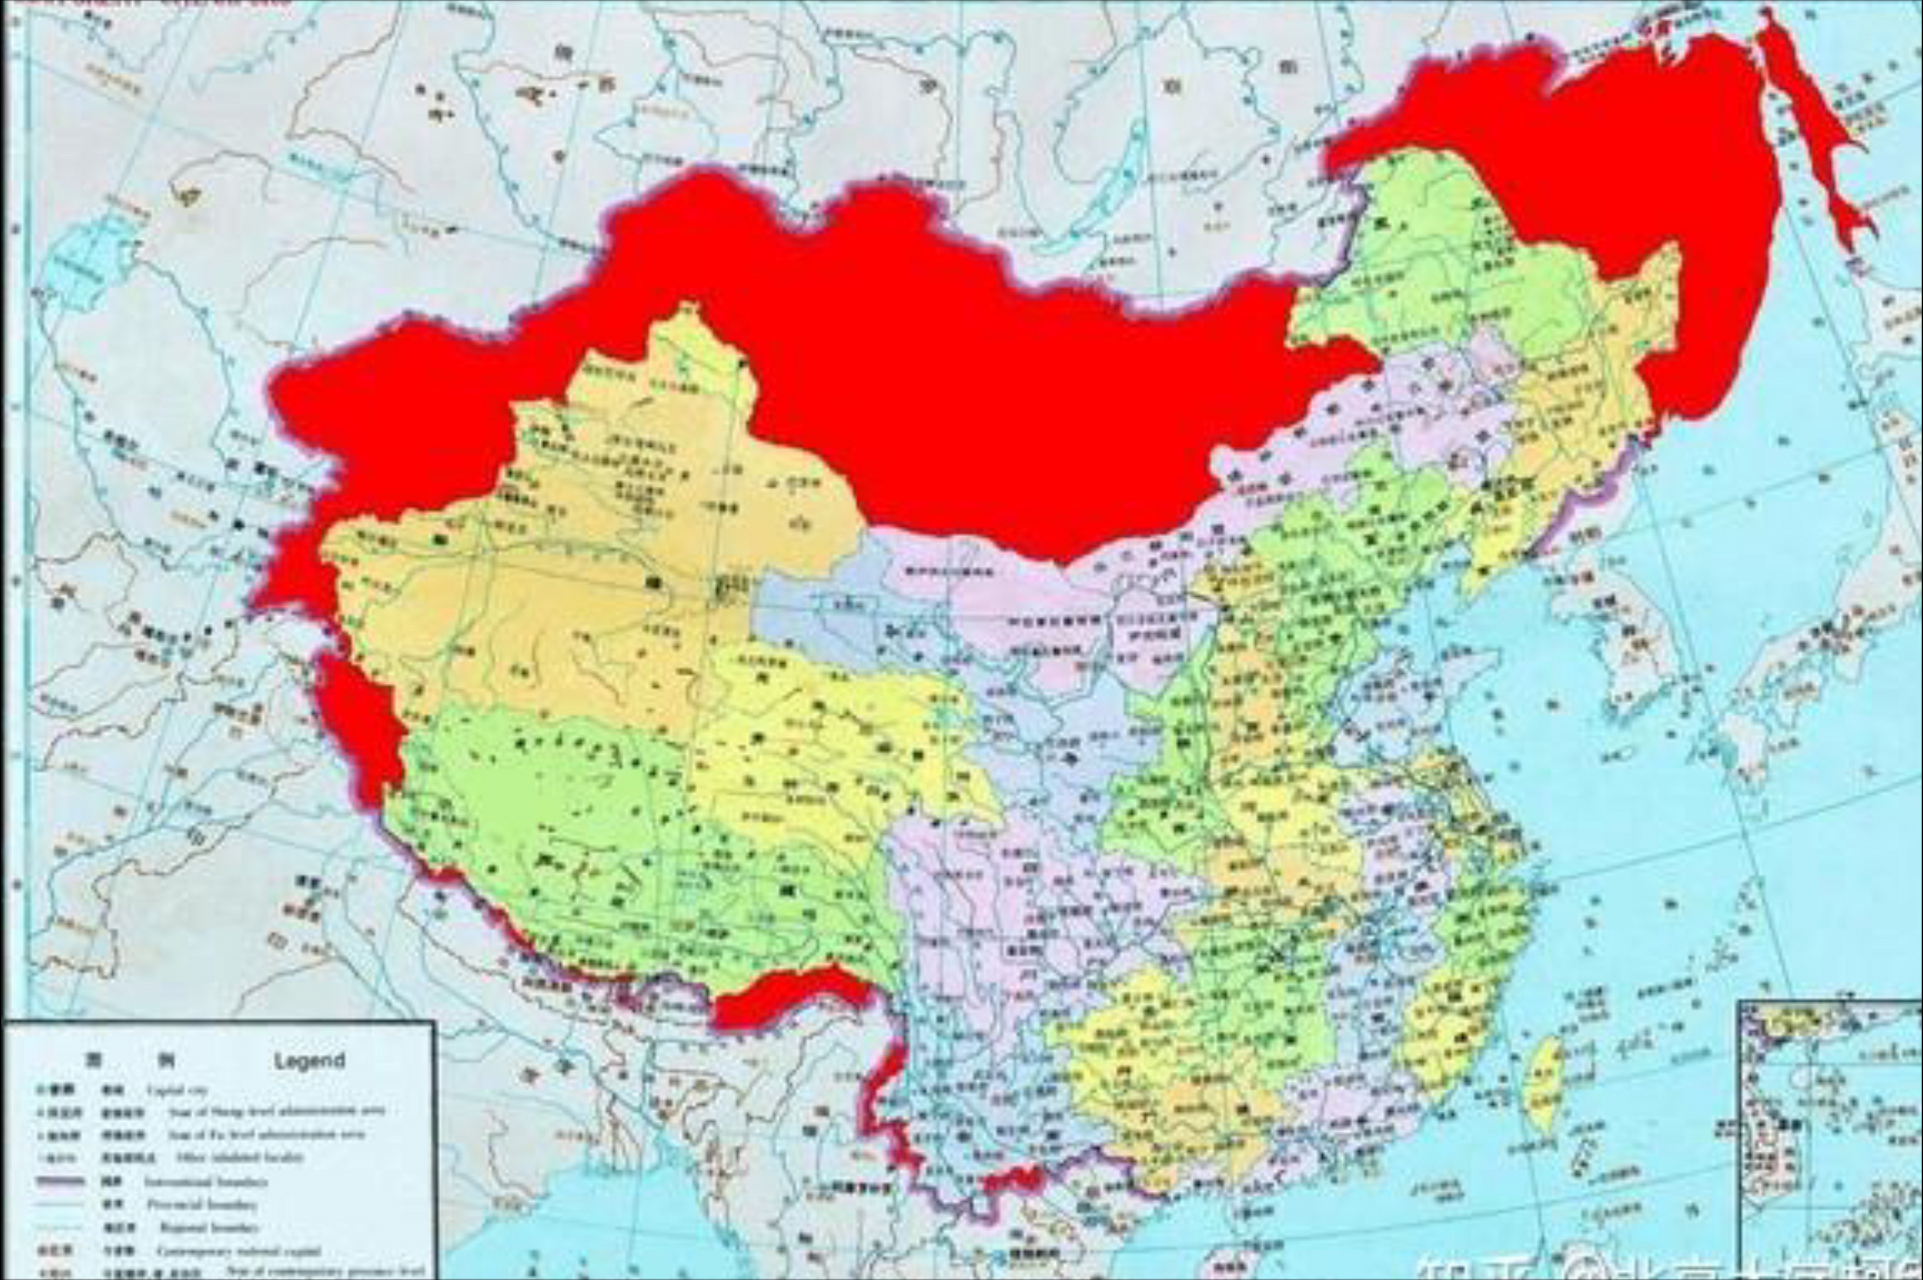 俄罗斯(前苏联)侵占中国领土高达58838万平方公里,数字触目惊心